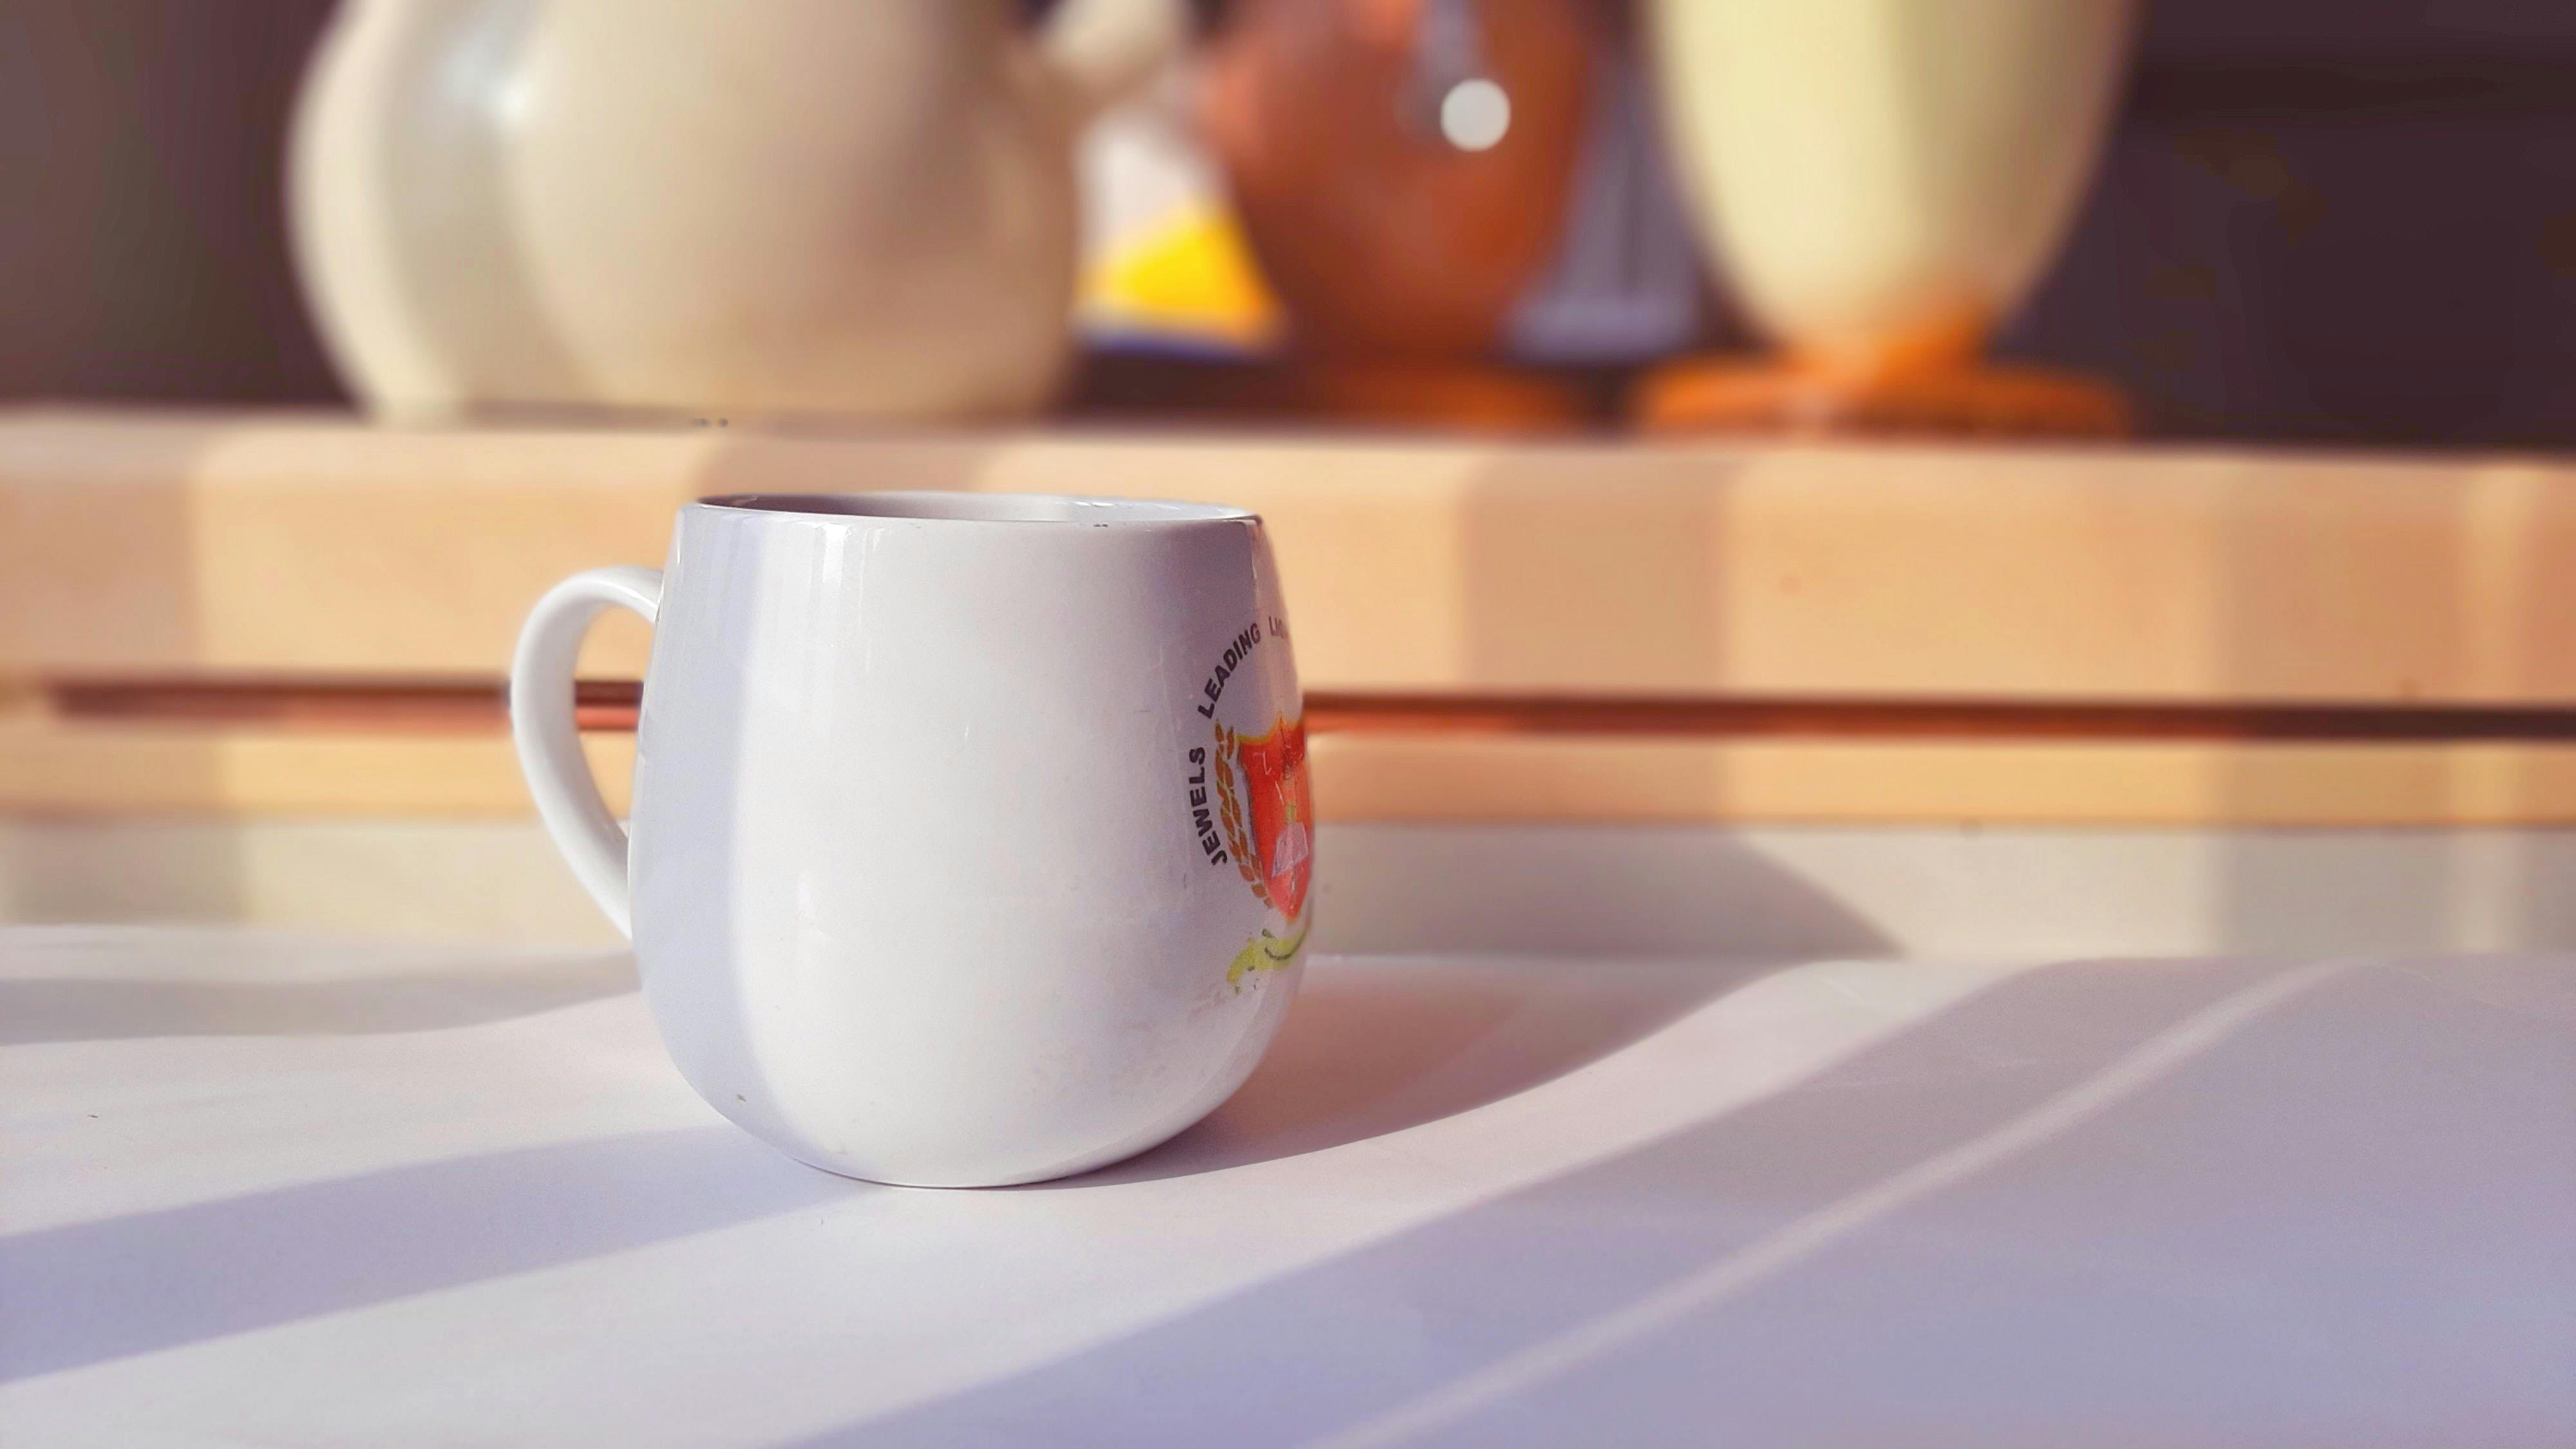 tea-cup-blurred-background.jpeg